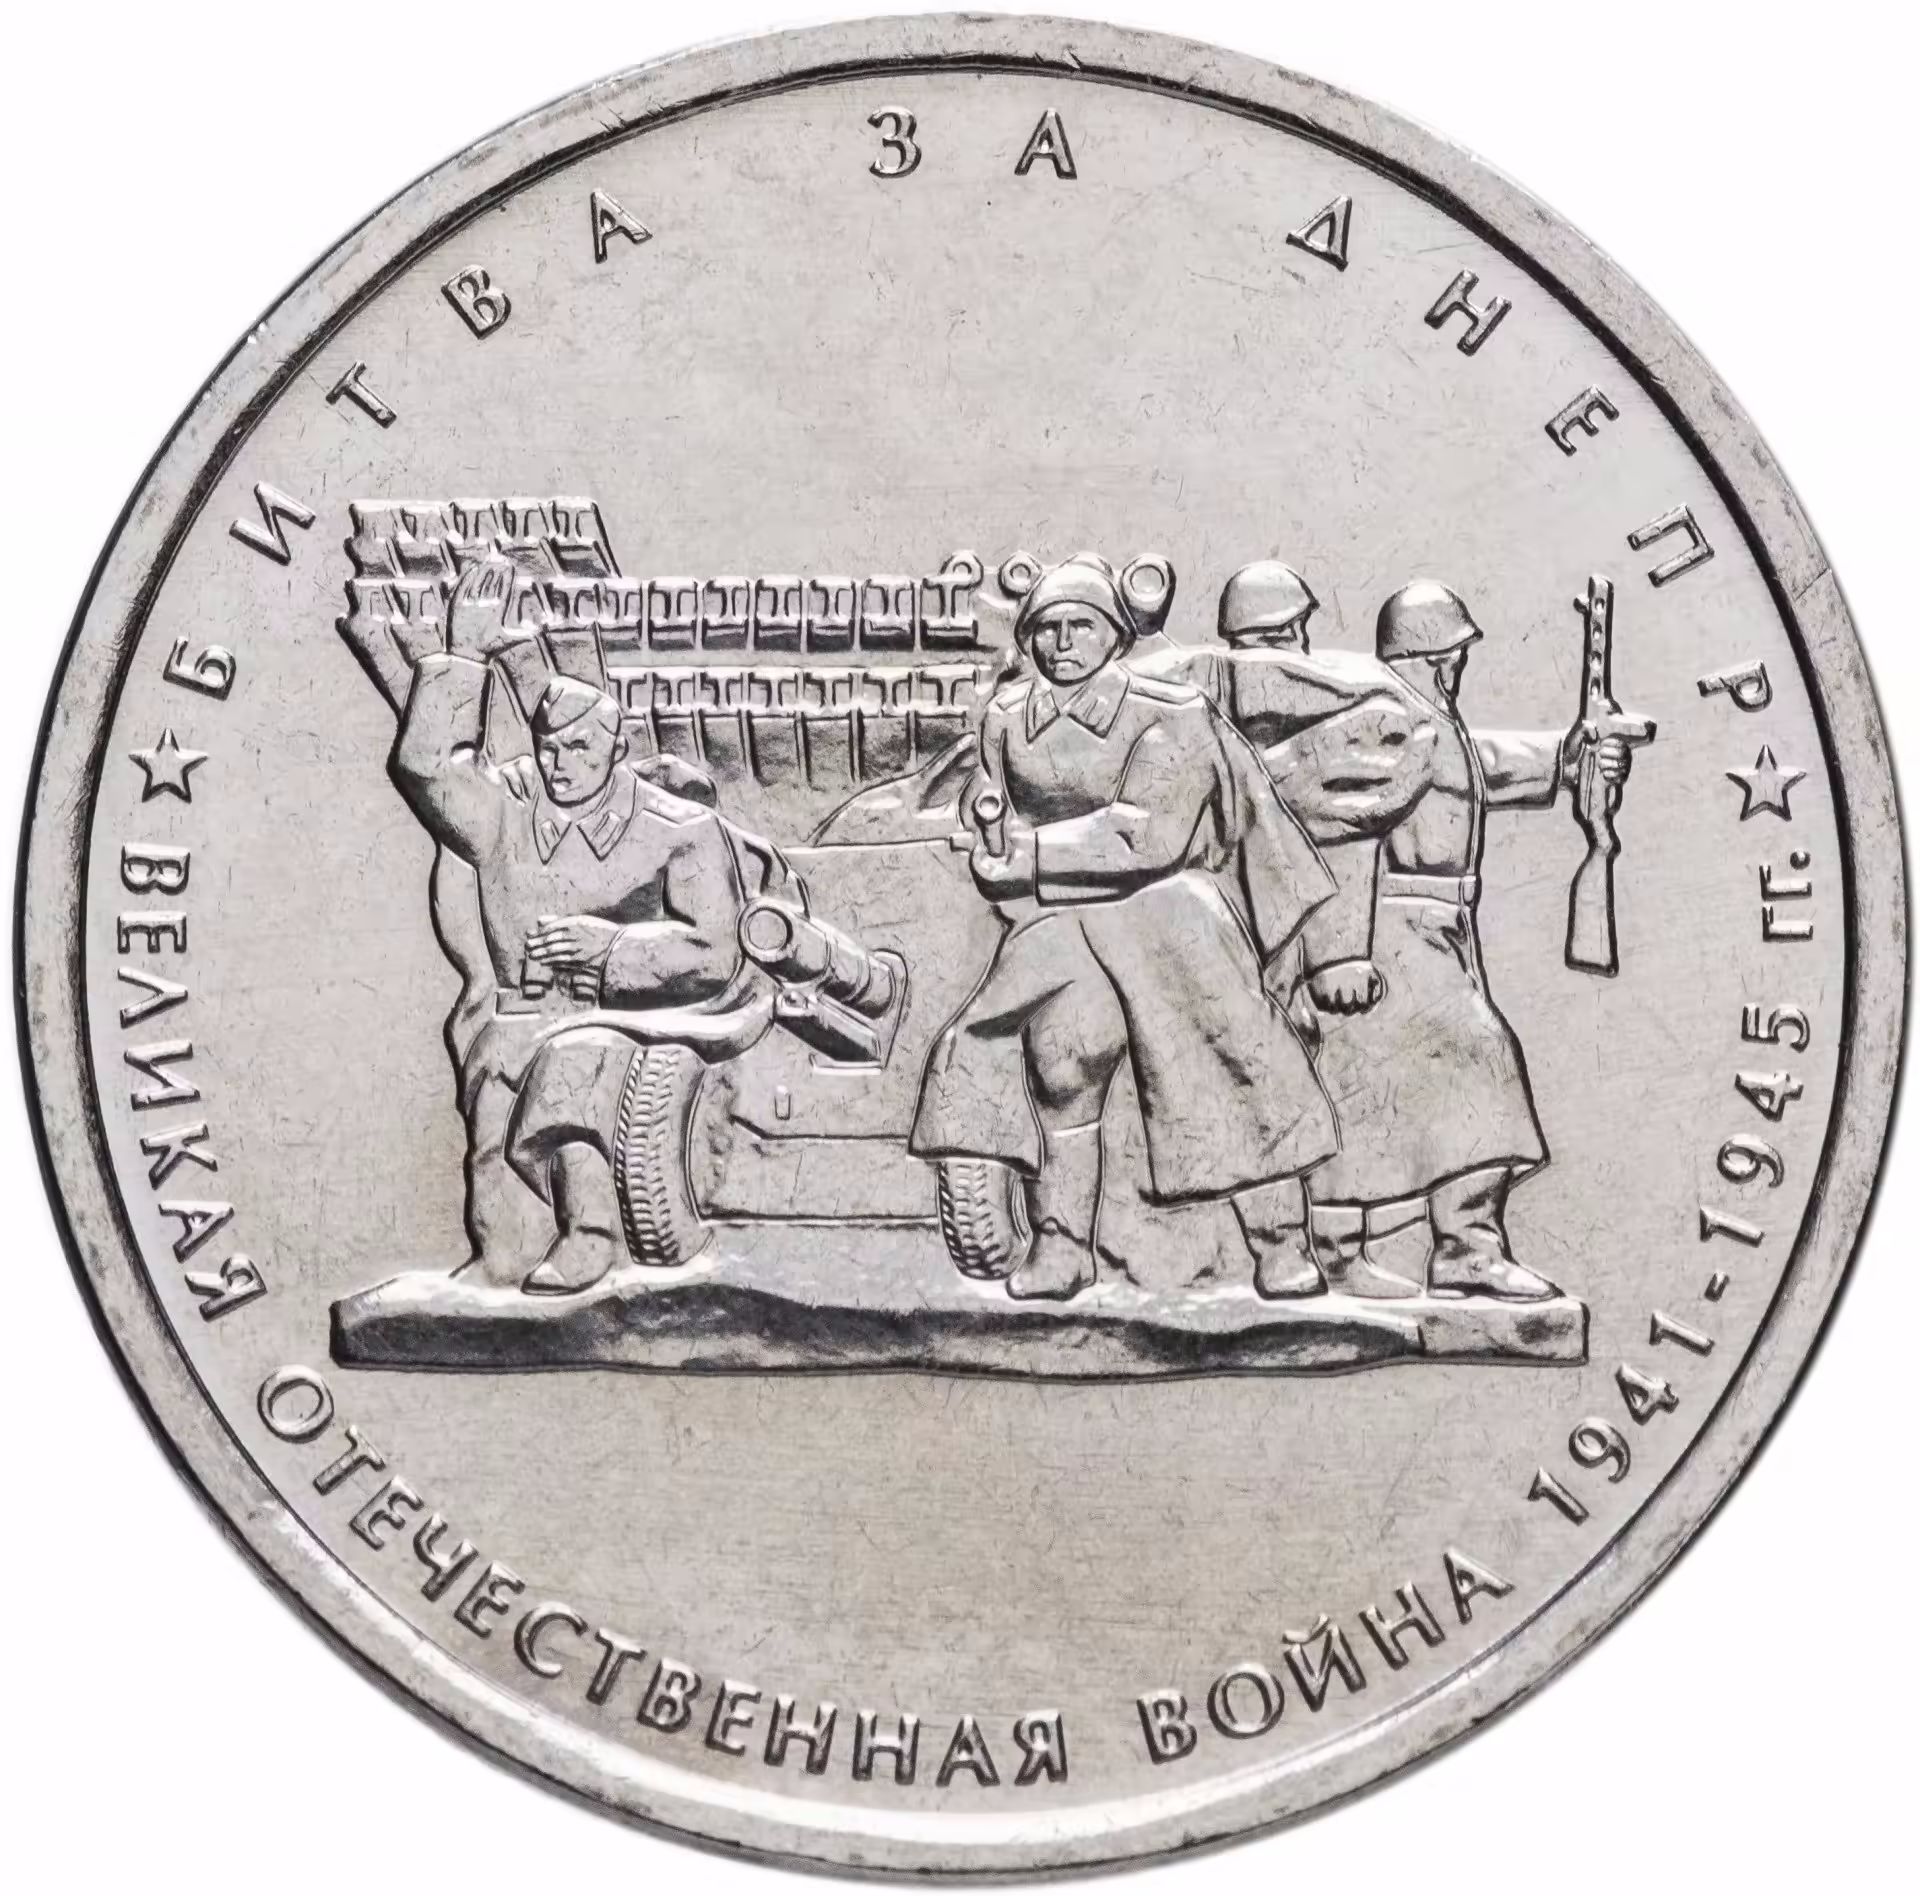 5 рублей памятные. 5 Рублей 2014 битва за Днепр. Монета 2014 год 5 рублей битва за Днепр. Юбилейная монета битва за Днепр.